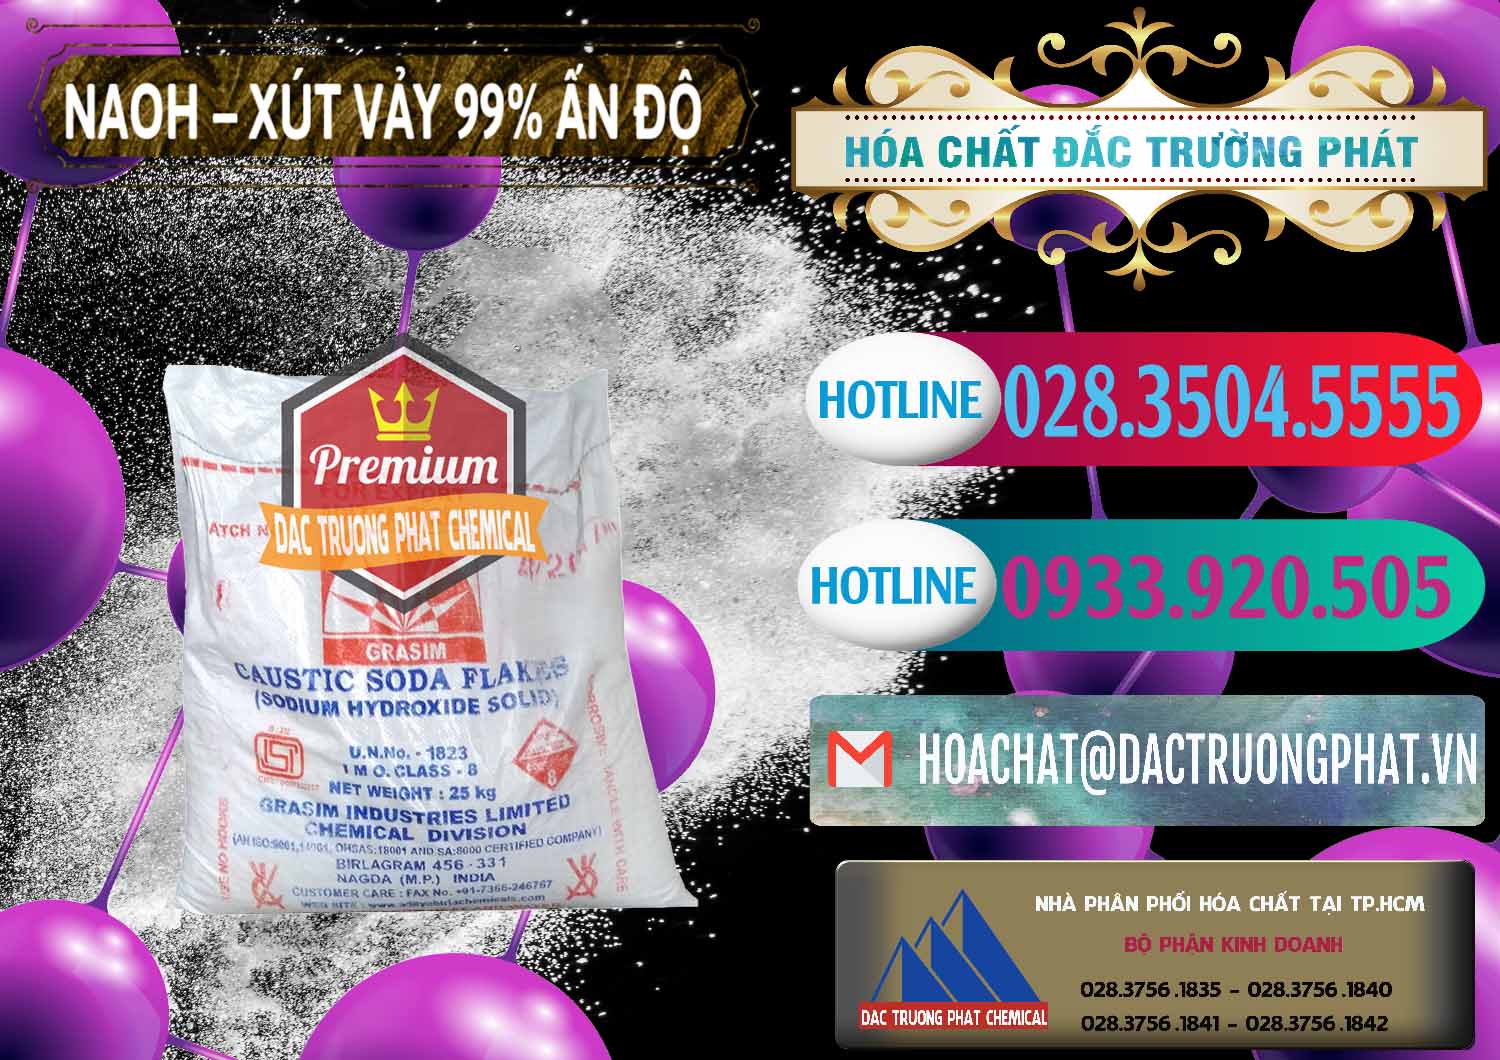 Cty cung cấp ( bán ) Xút Vảy - NaOH Vảy 99% Aditya Birla Grasim Ấn Độ India - 0171 - Nơi chuyên cung cấp và nhập khẩu hóa chất tại TP.HCM - truongphat.vn